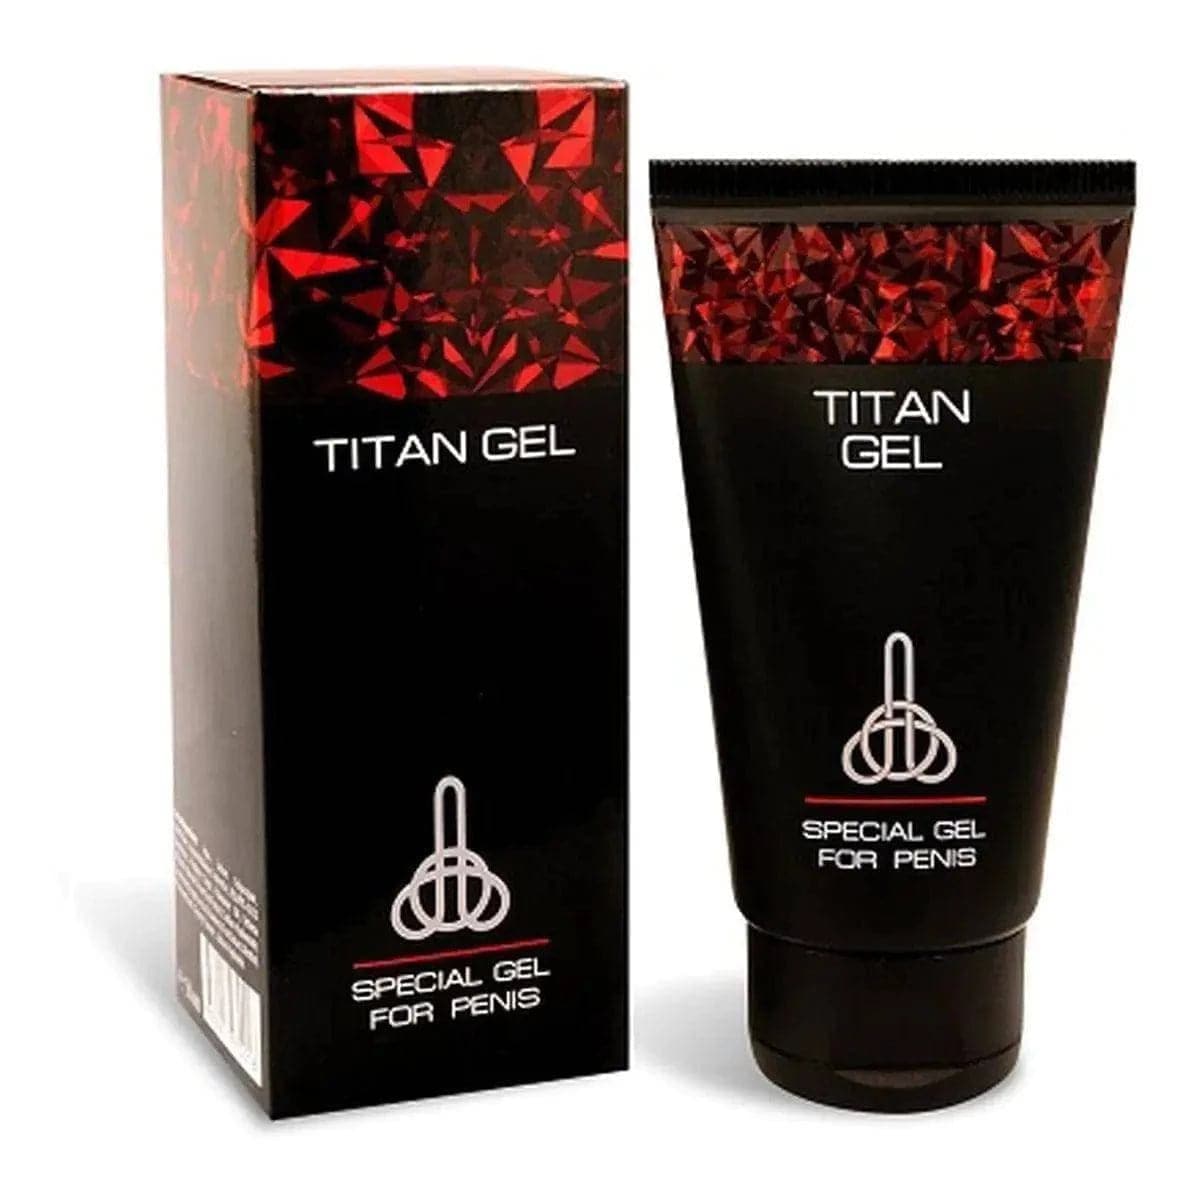 Creme Aumento do Pénis Titan Gel 50ml - Ereções Mais Vigorosas e Aumento do Tamanho  Titan Gel   